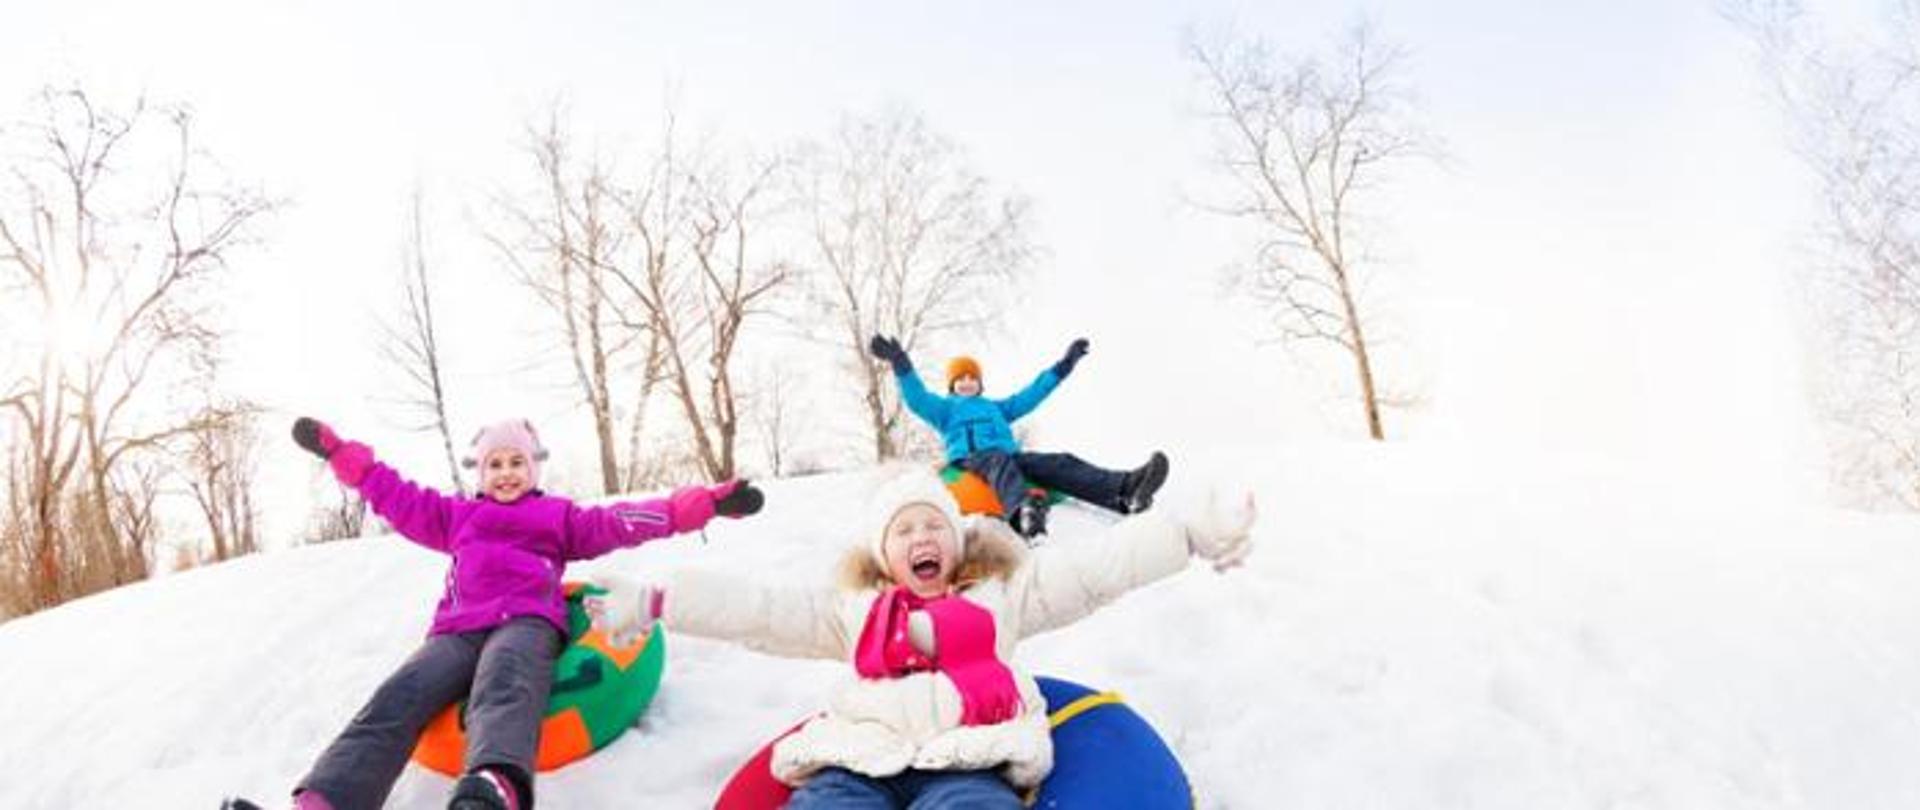 trójka dzieci zjeżdża z zaśnieżonej górki na oponach